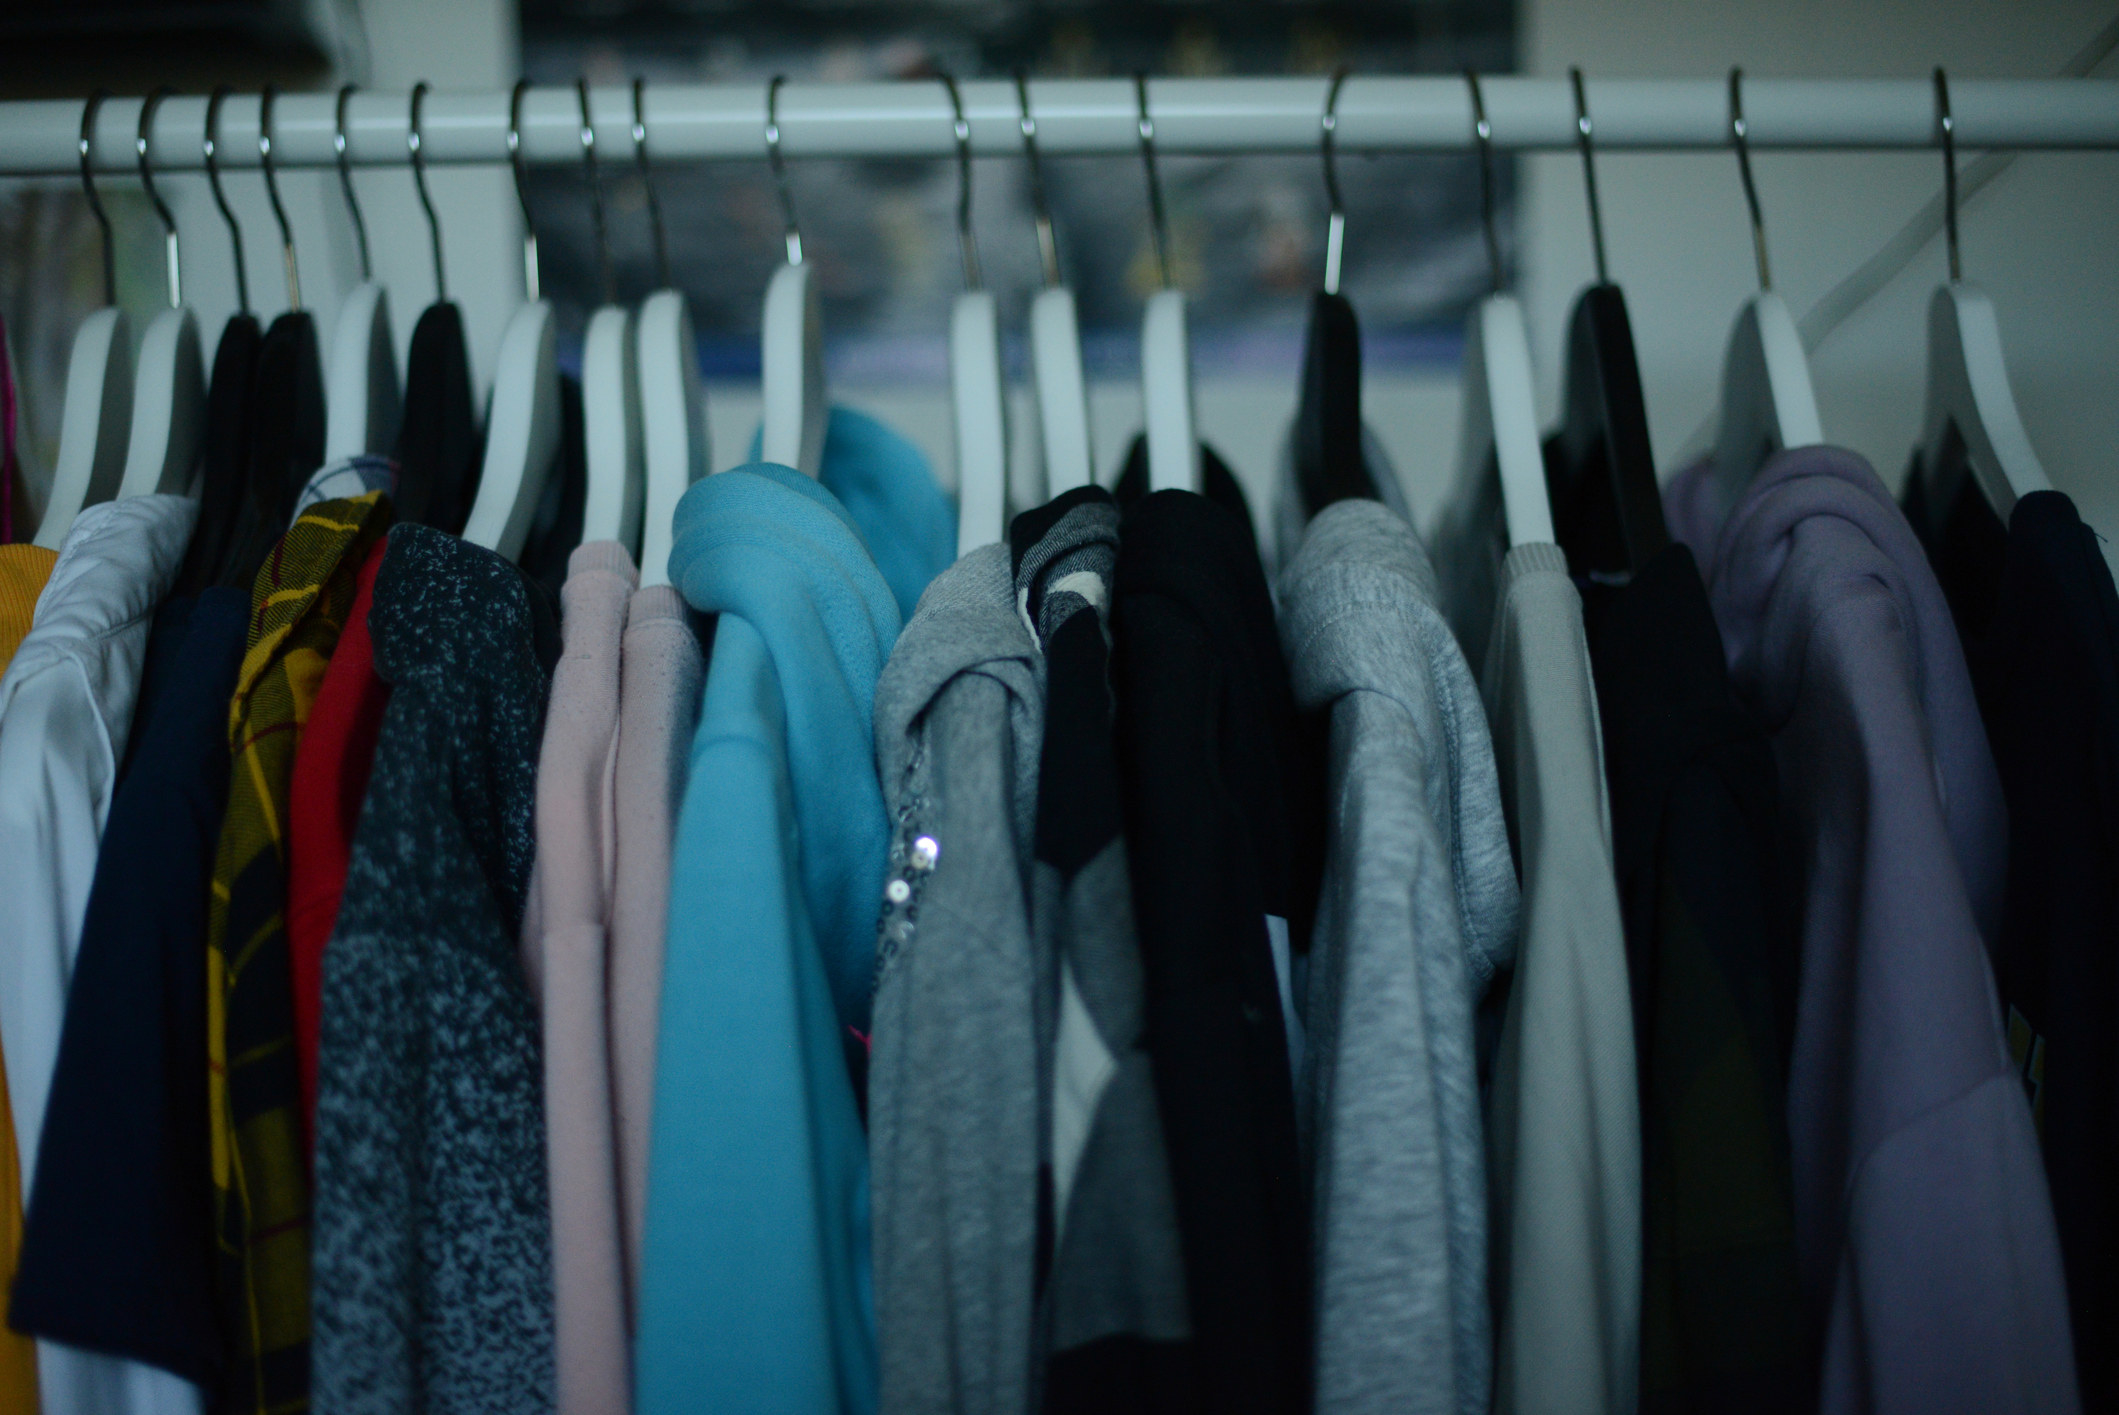 Close-up of closet rack of hoodies